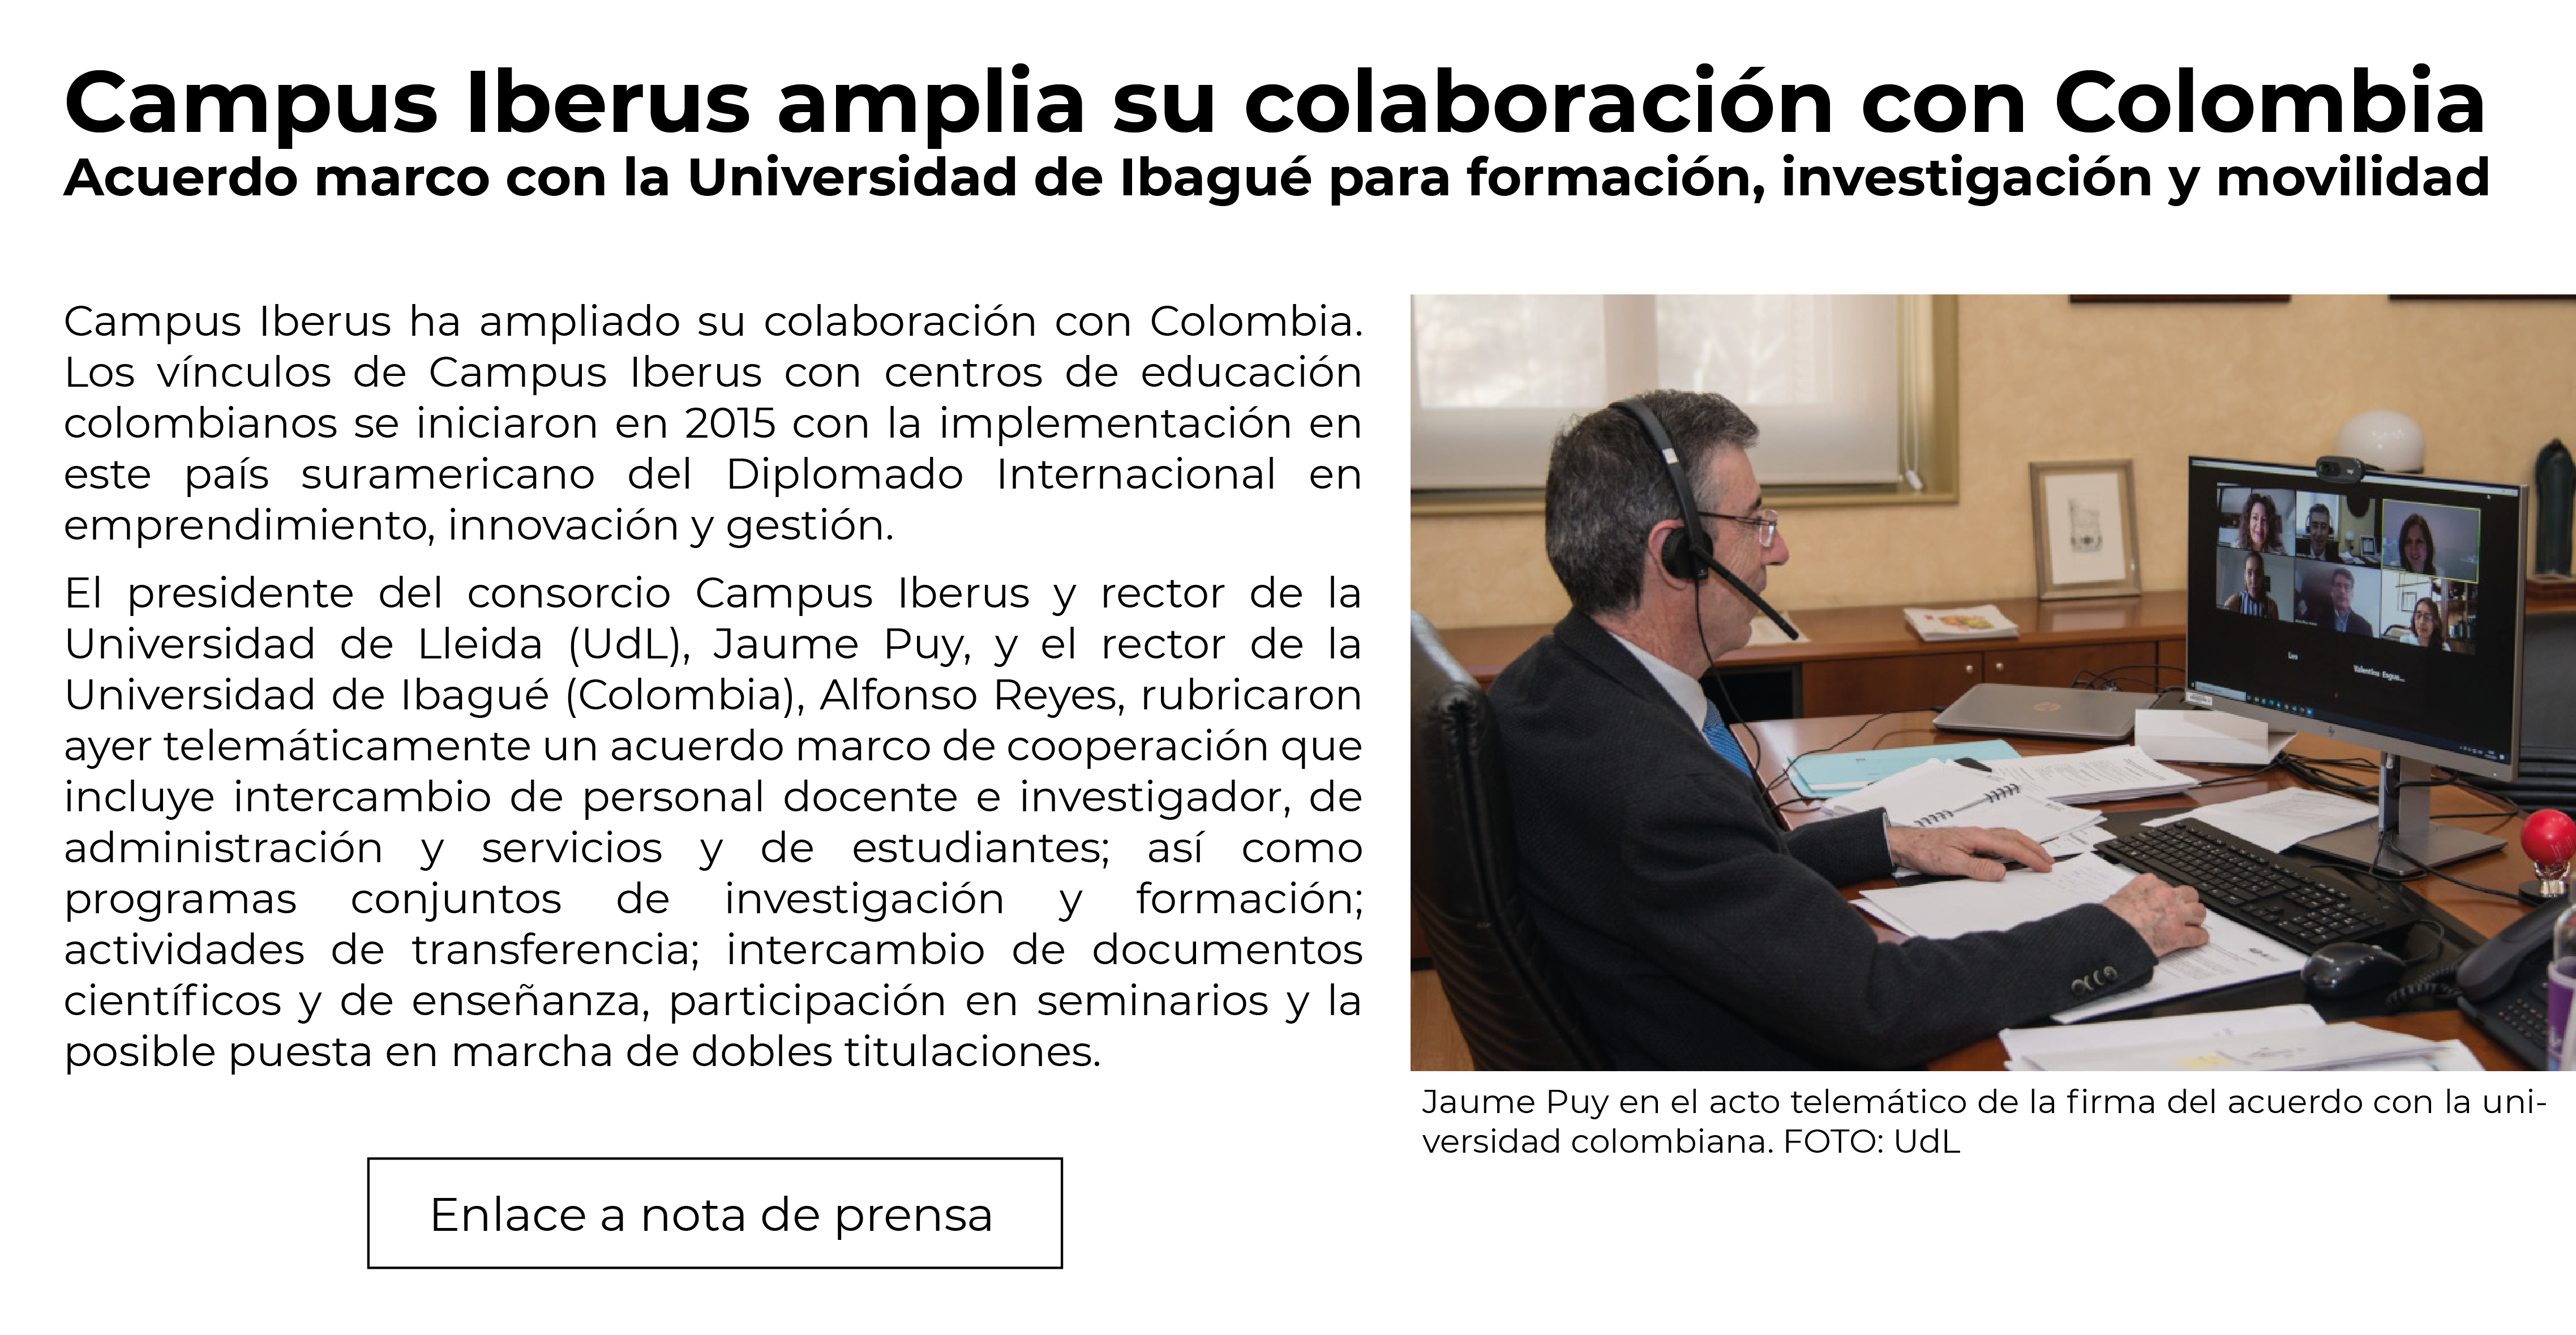 ACT_ColaboracionColombia_2021